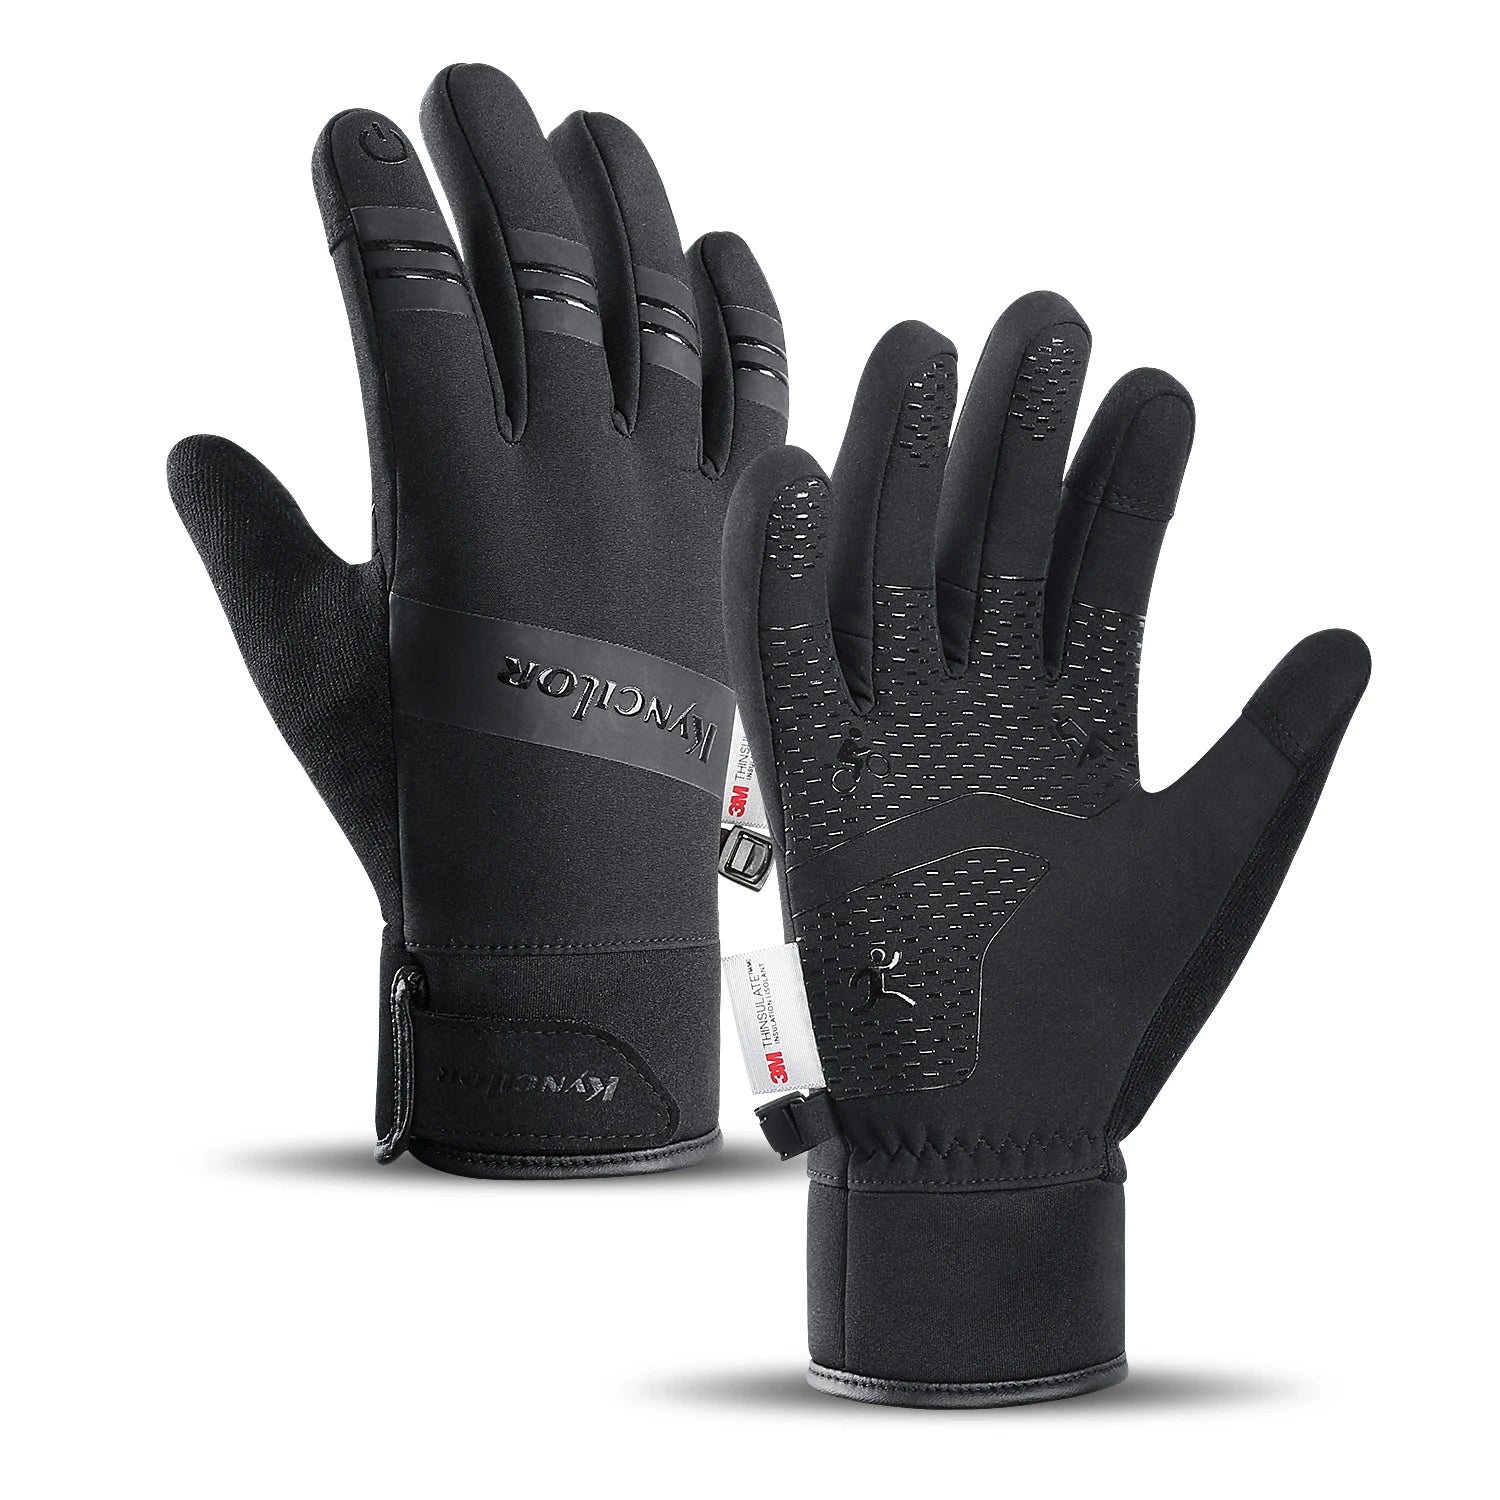 Premium Touchscreen-Handschuhe: Hochwertige warme 3M-Laufhandschuhe für Radfahren, Motorrad, Outdoor, Roller, winddicht, Sport, Reiten | Limitierte Auflage - Phone Heaven Zone